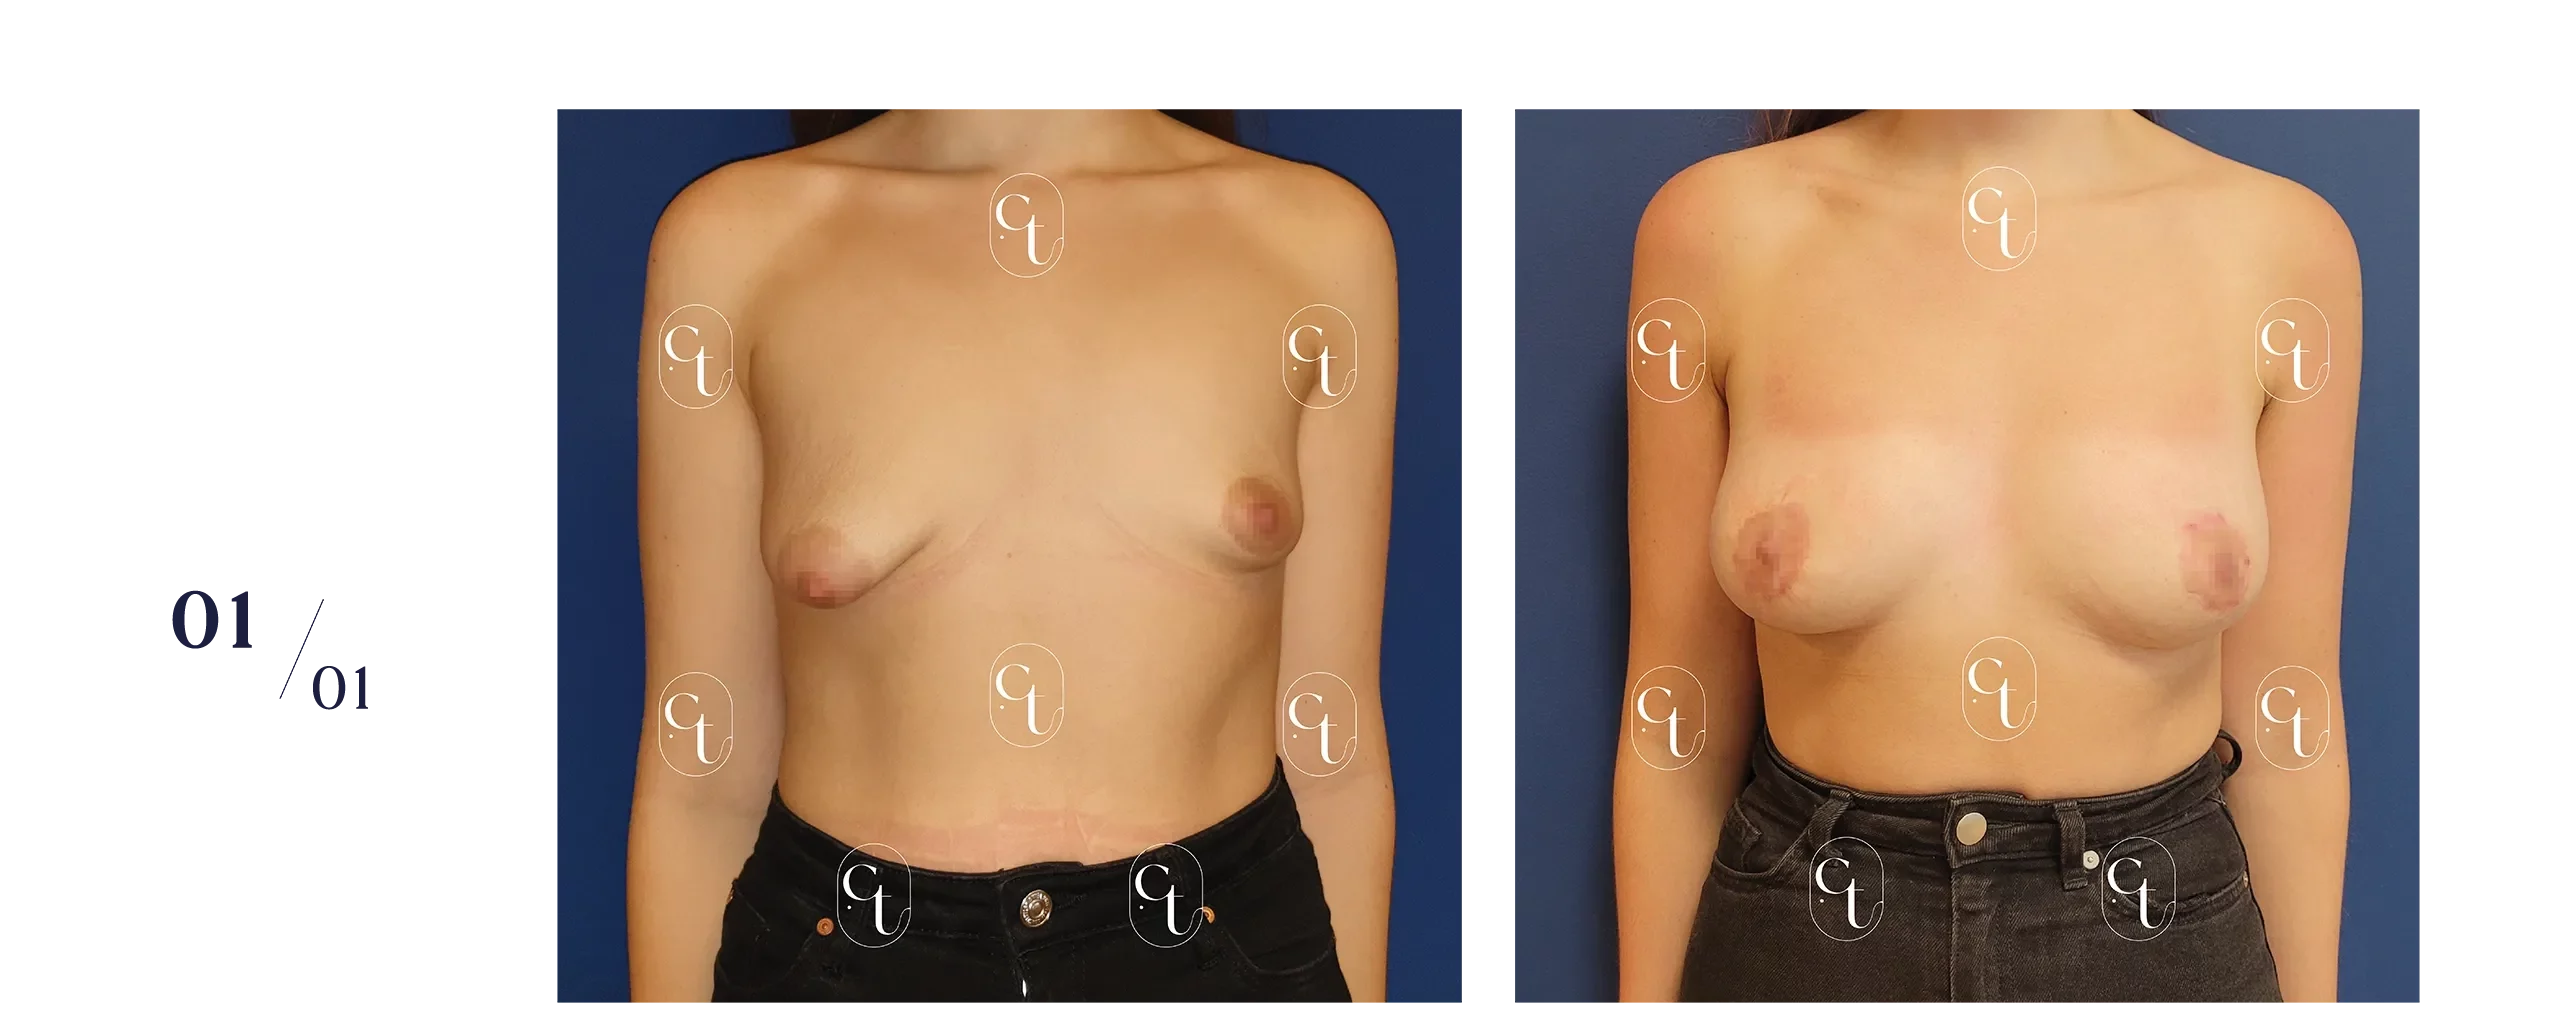 Patiente présentant des seins tubéreux asymétriques. La prise en charge associe un lifting mammaire ou mastopexie pour replacer les aréoles, et des séances de lipofilling afin de symétriser/augmenter le volume mammaire.